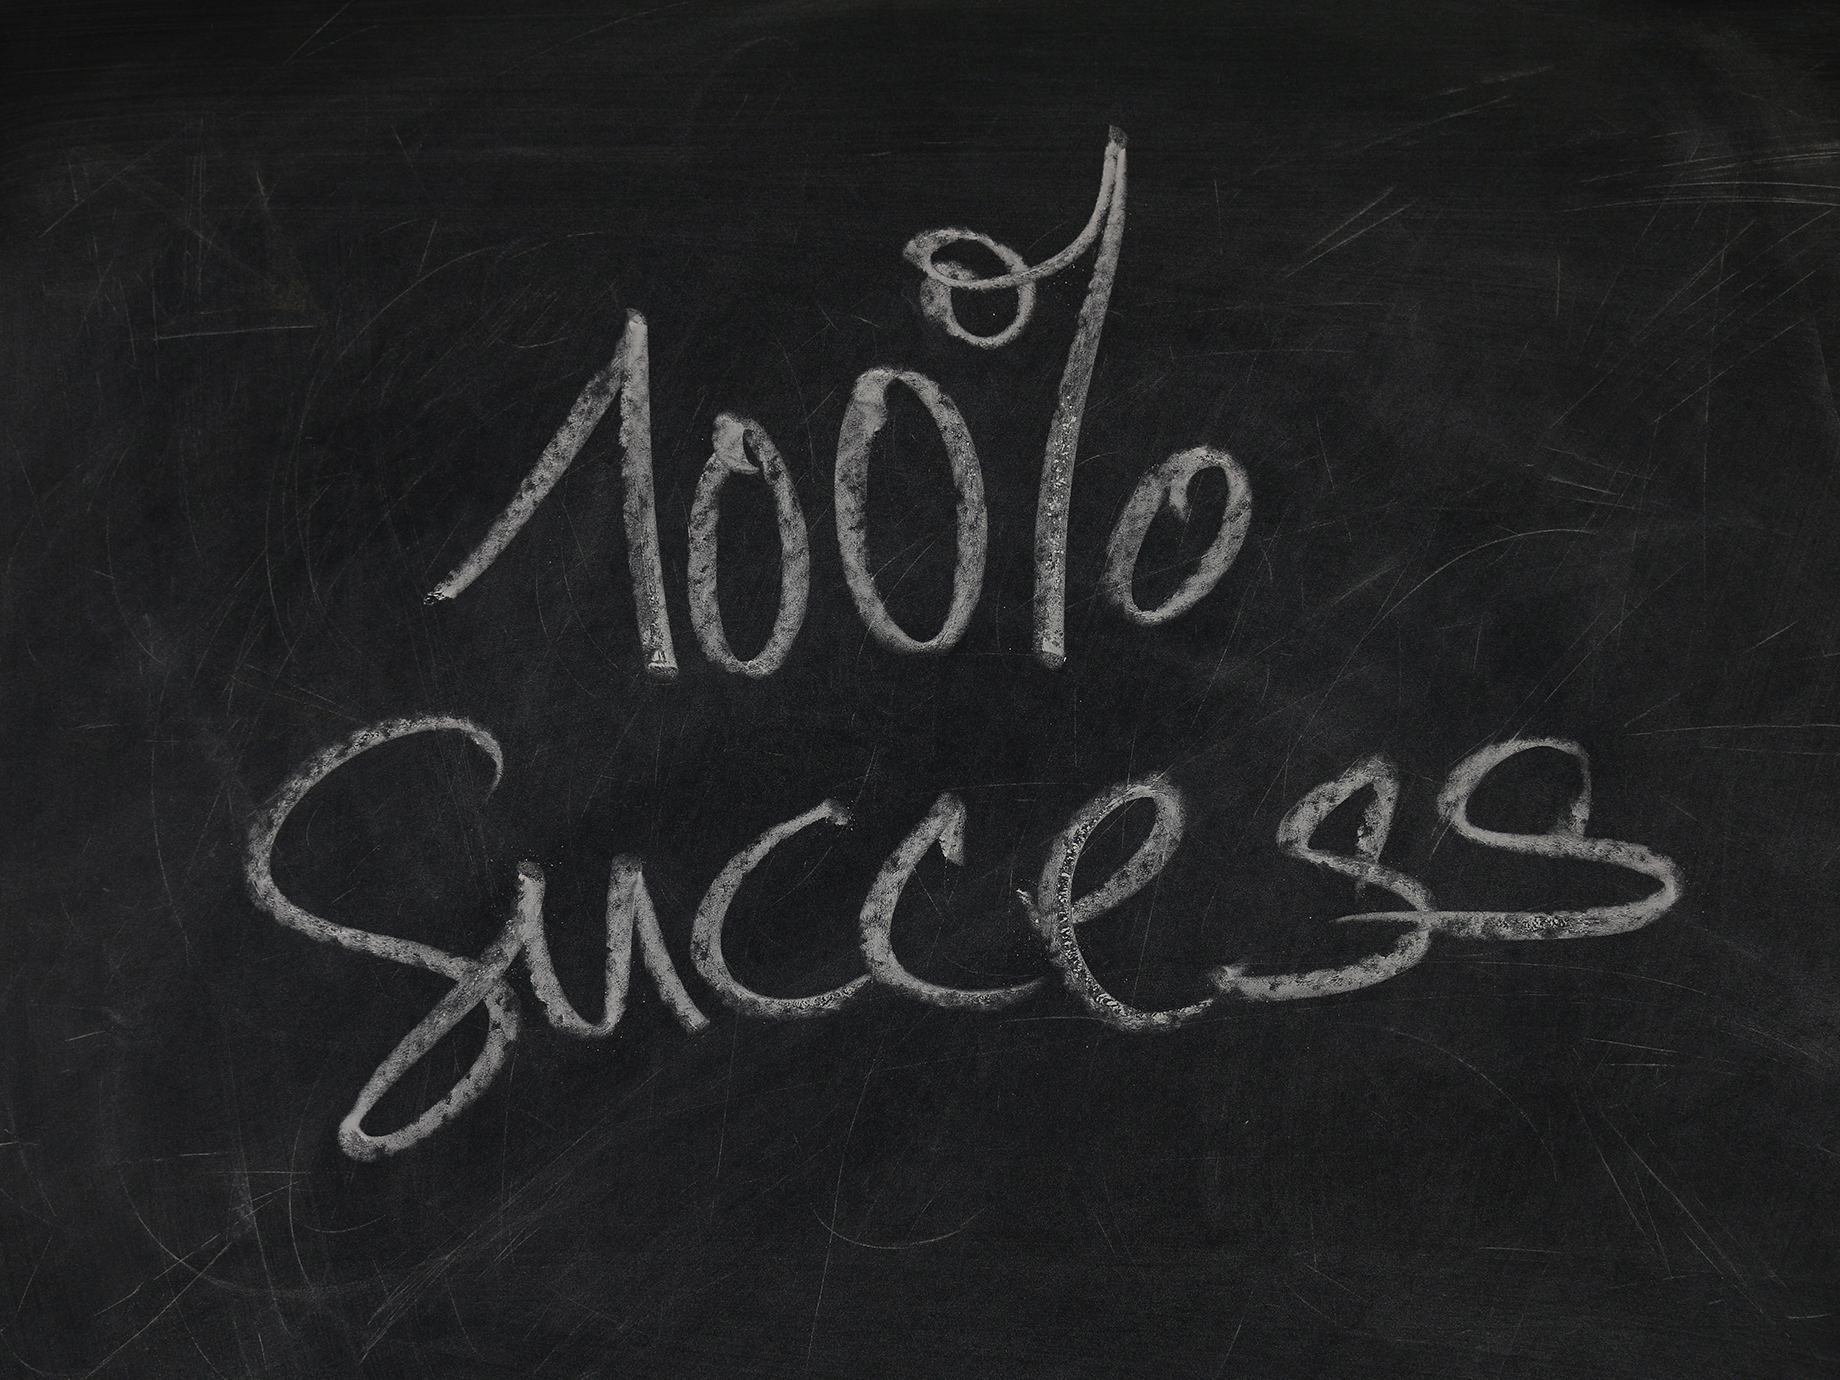 失敗的理由有100種，成功的管理卻只取決於一種態度：把事情做到、做好的決心